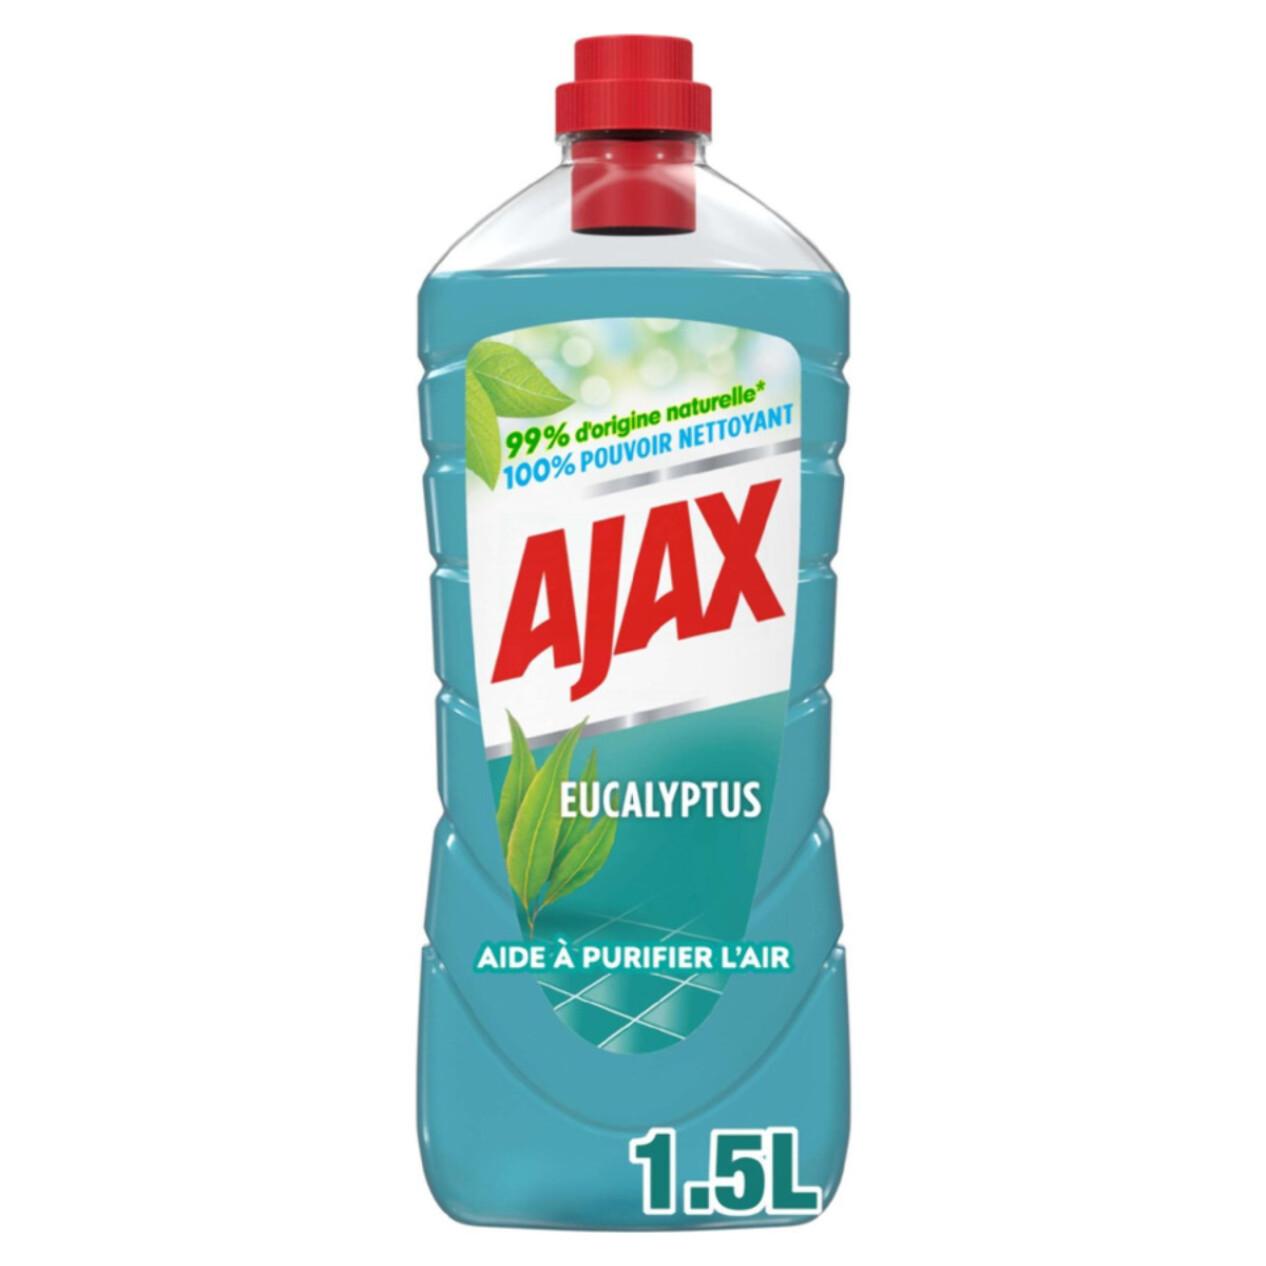 Pack de 8 - AJAX nettoyants ménagers Ajax d'origine Végérale Trad Eucalyptus 1,25l